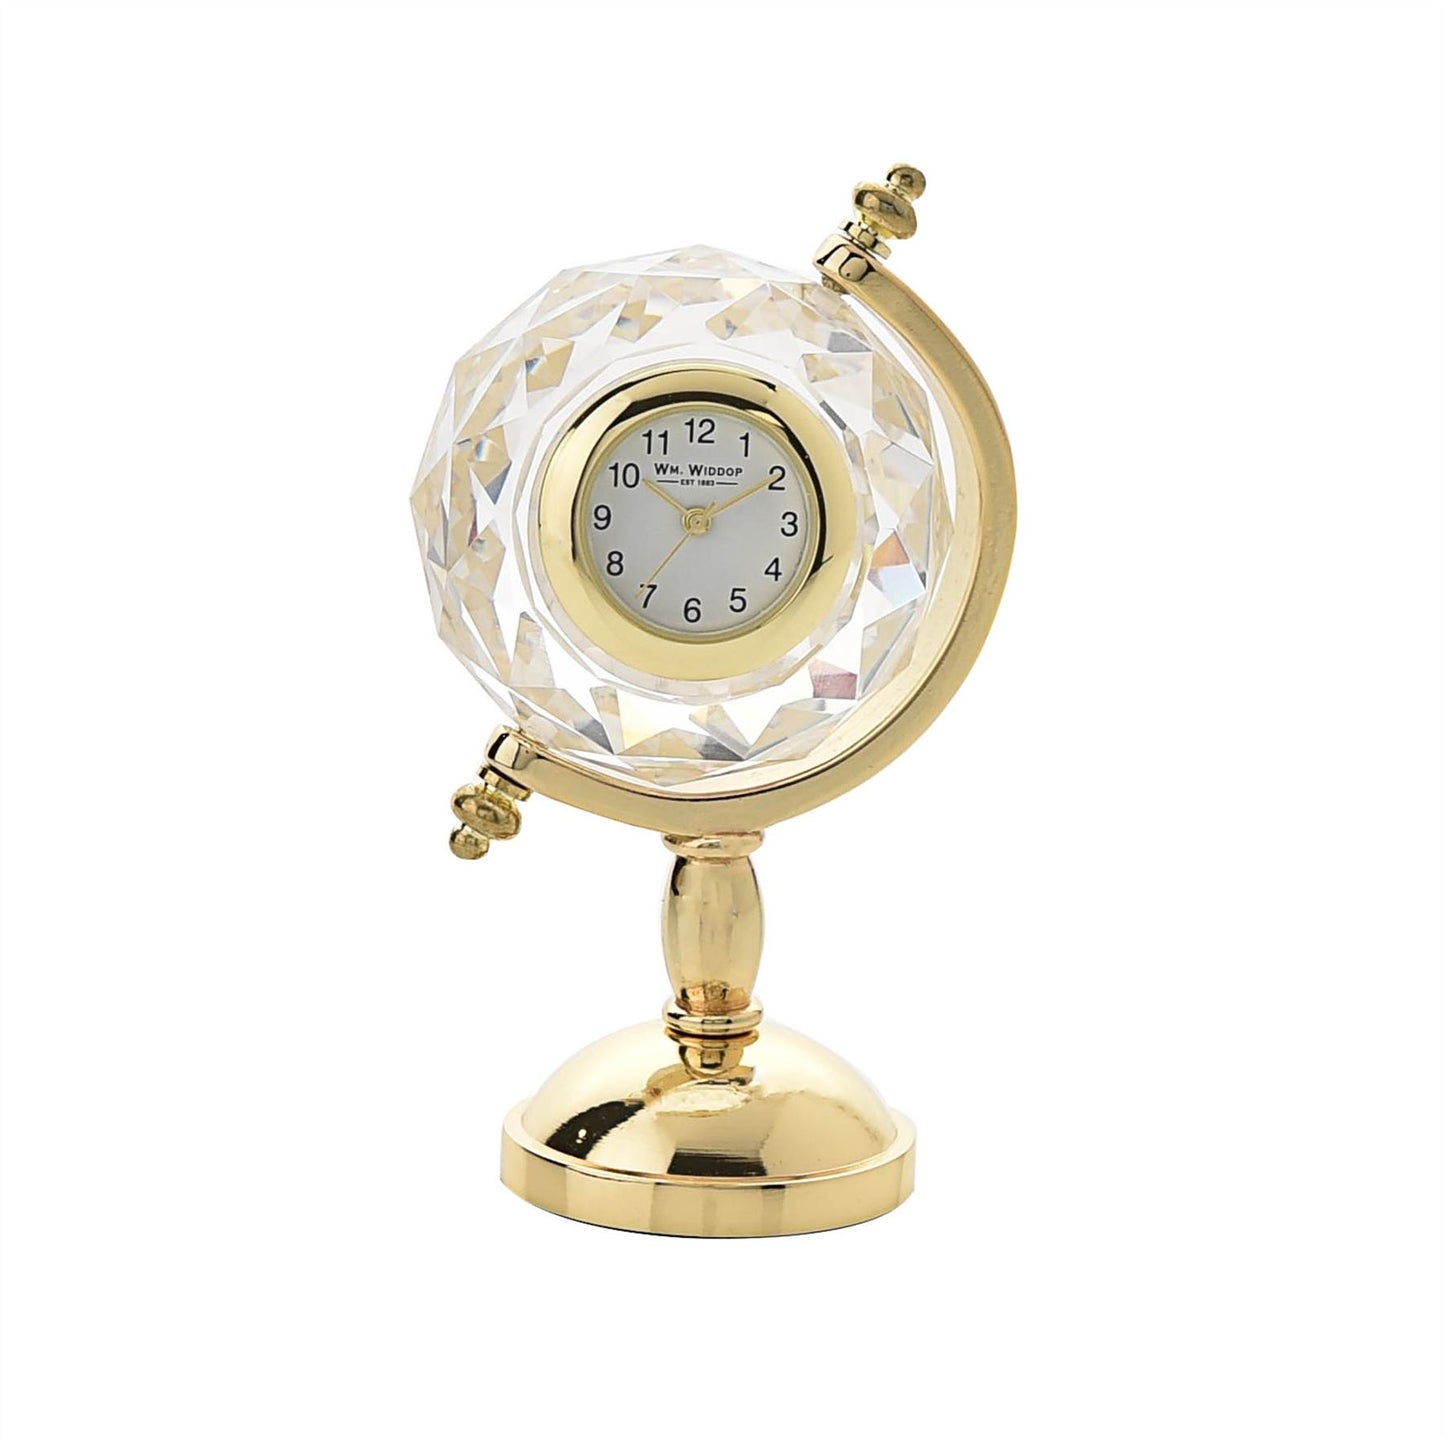 Wm.Widdop Miniature Clock Available Multiple Design